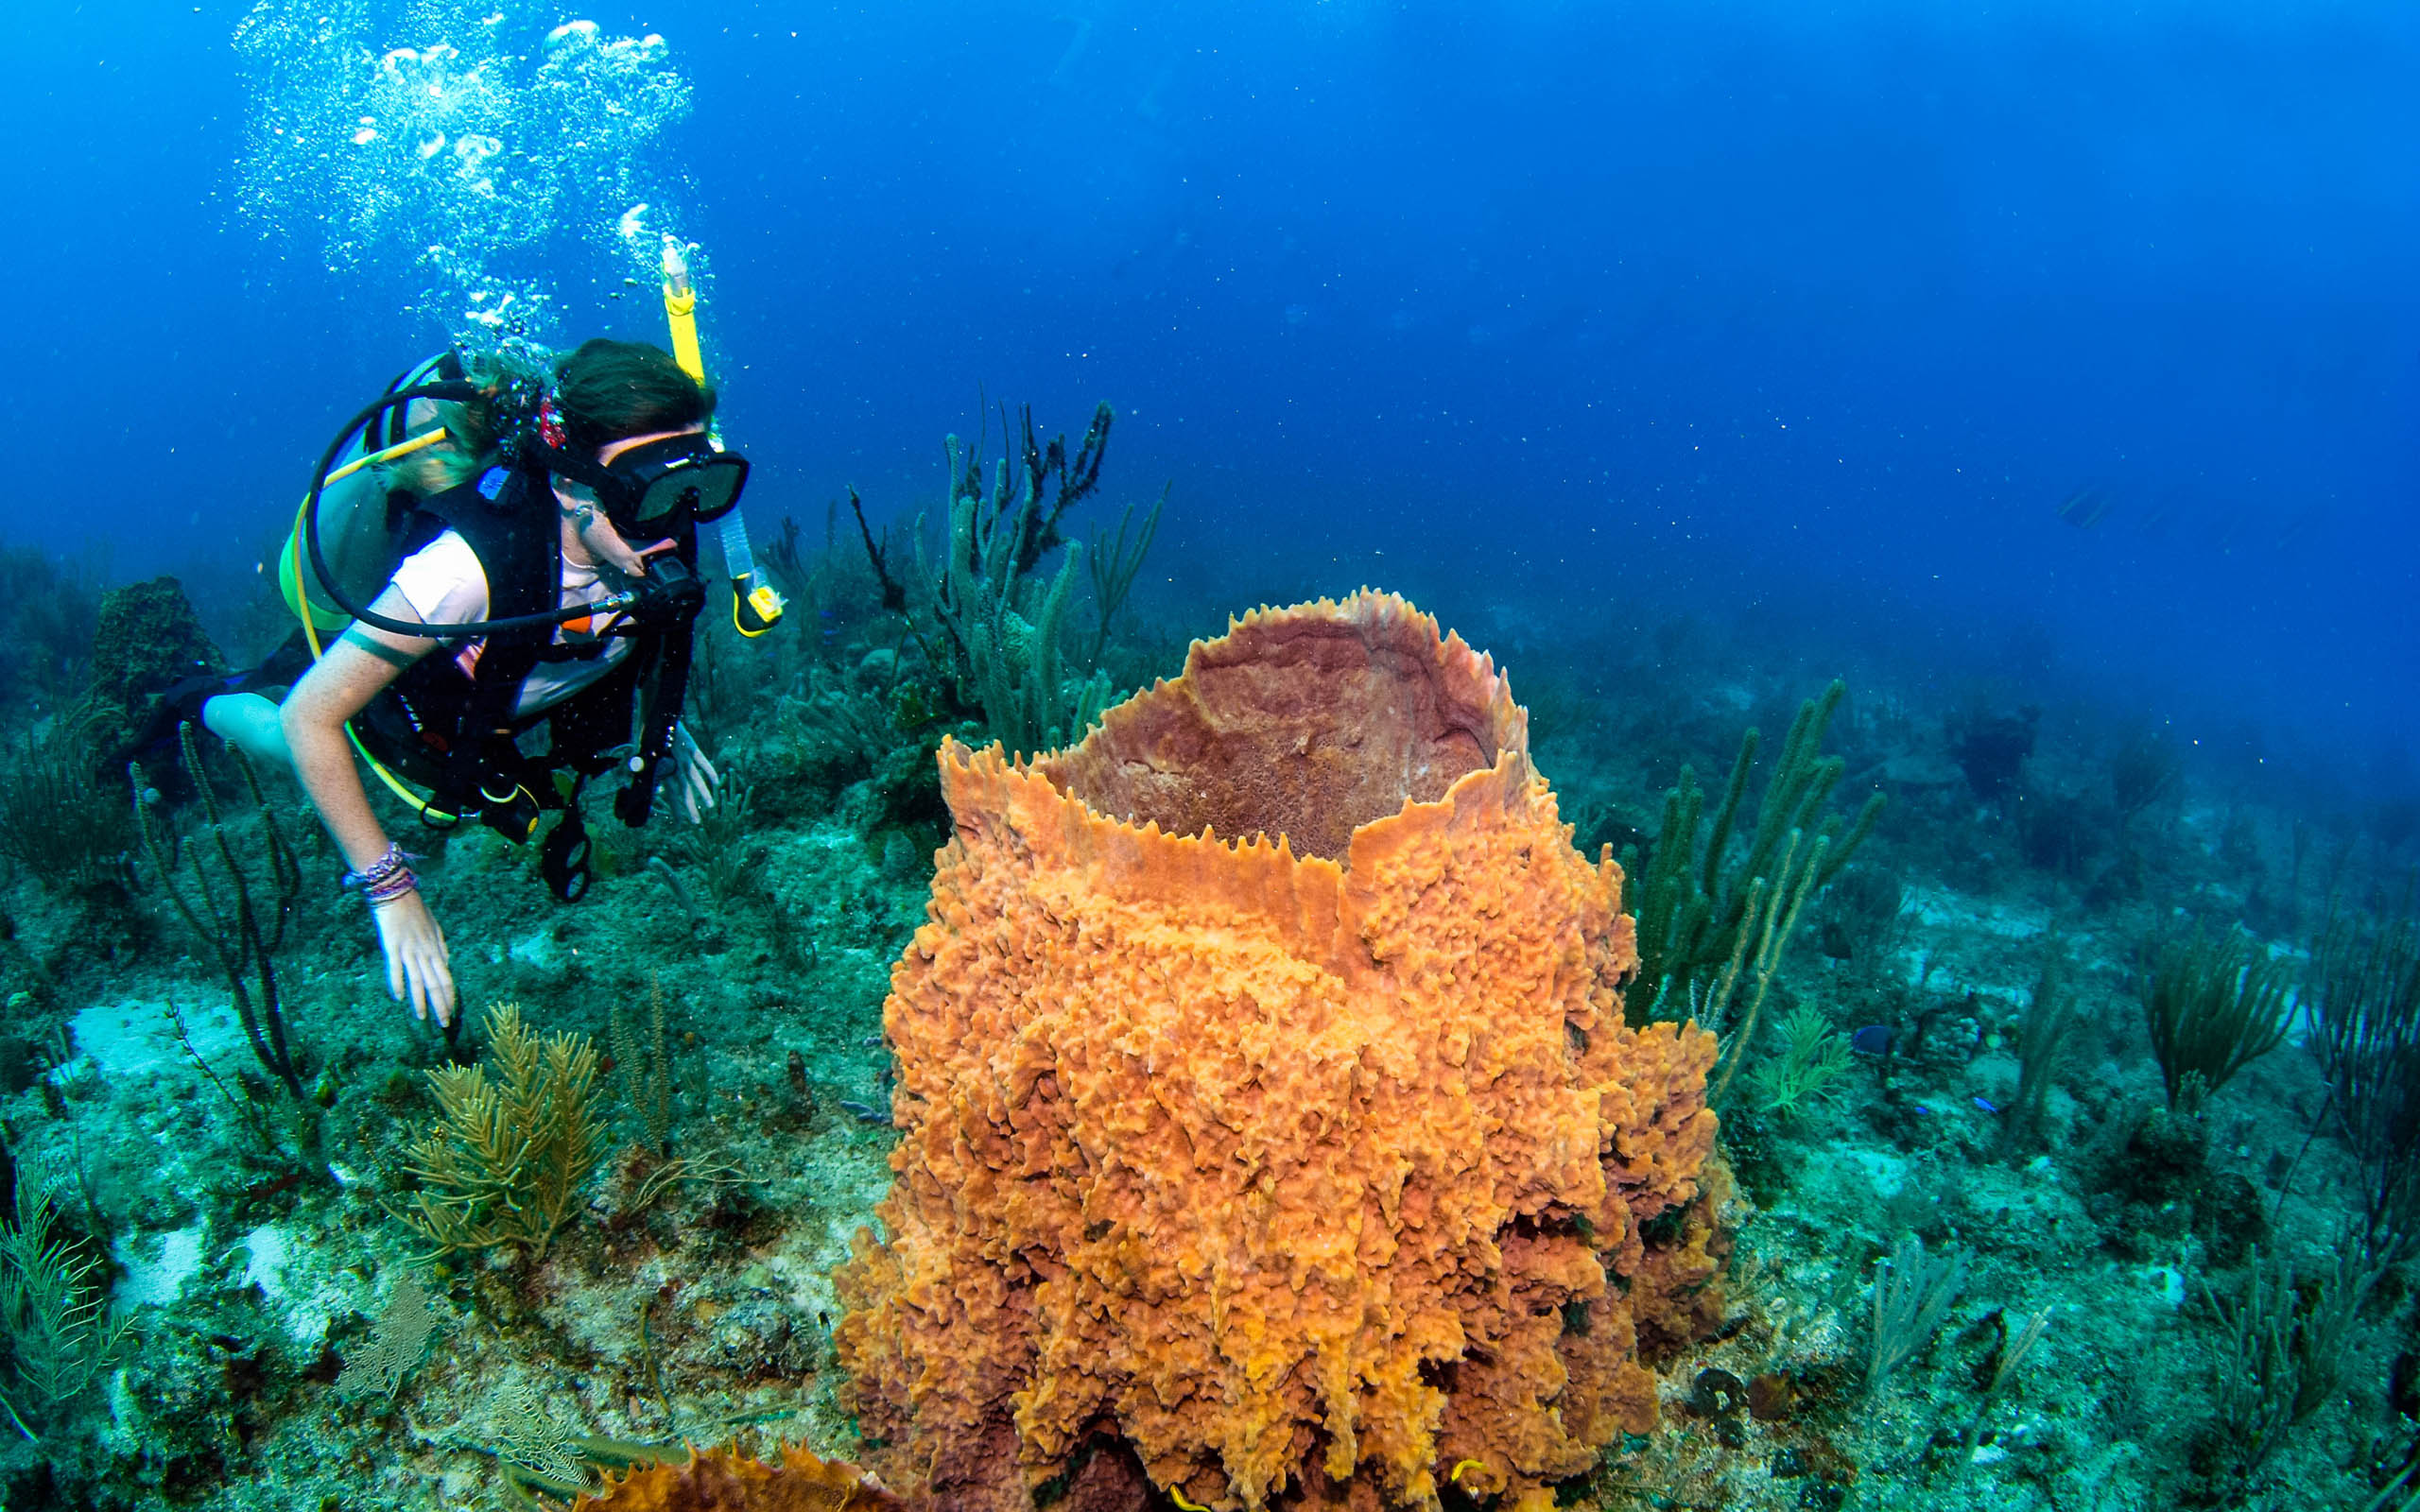 A scuba diver scuba diving near an orange sponge.